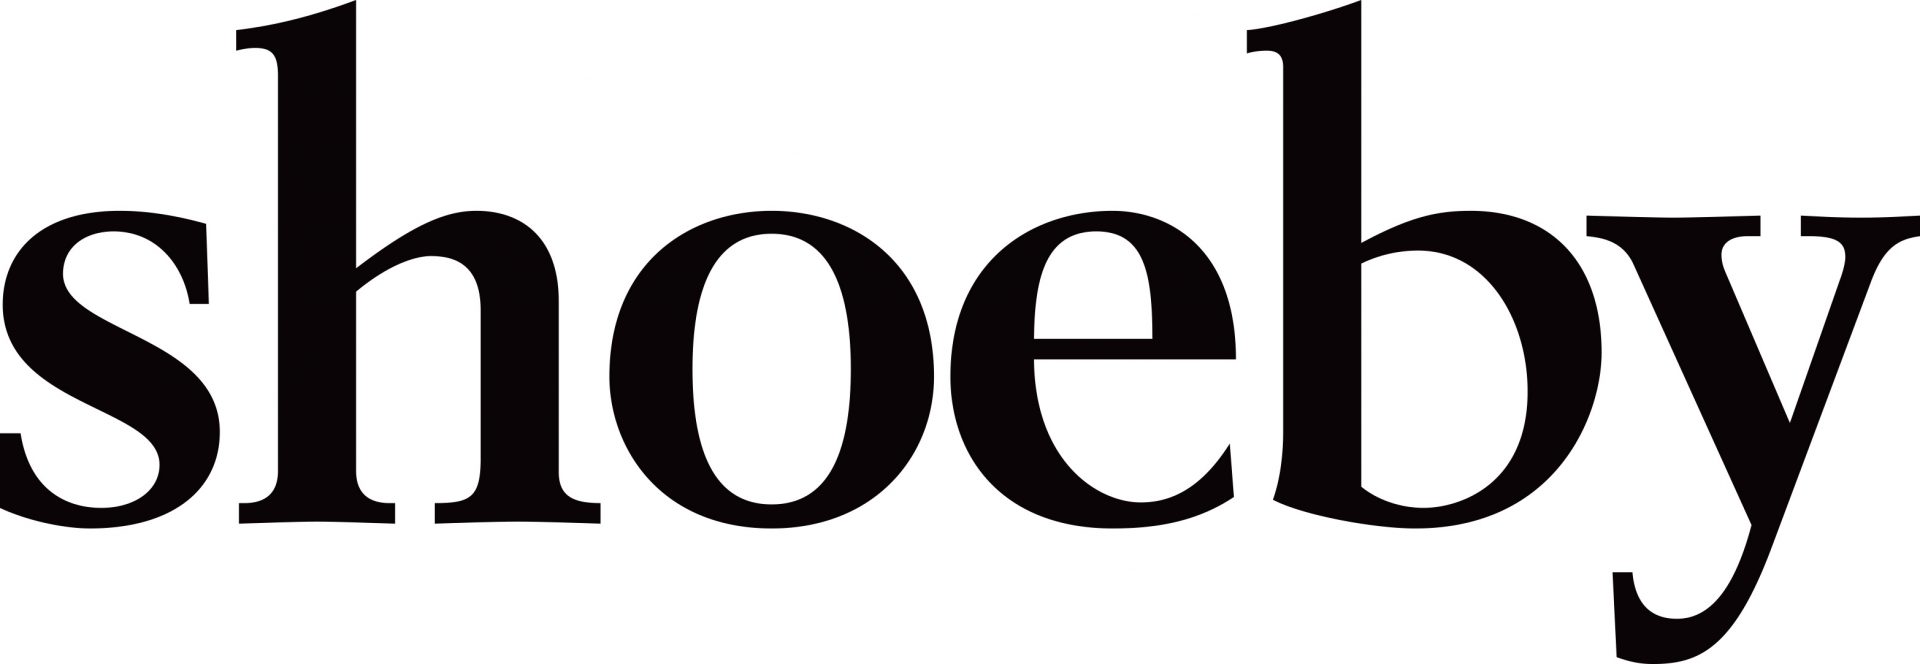 Shoeby logo